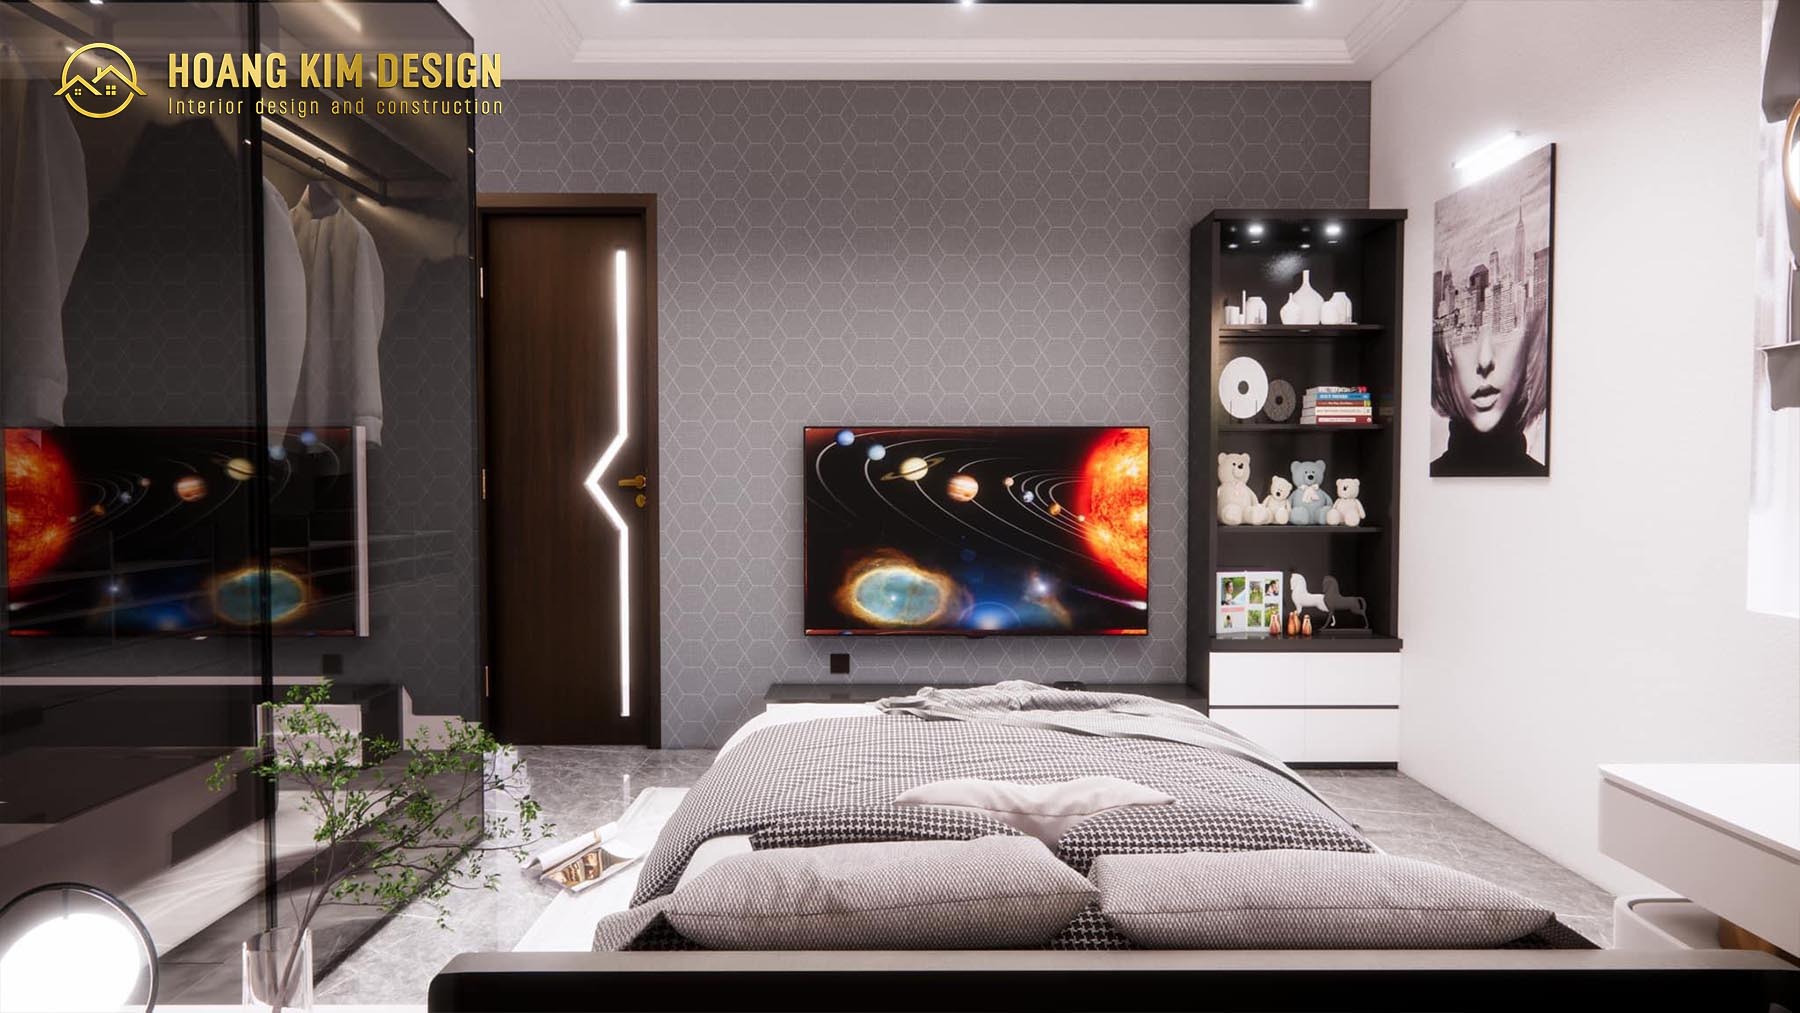 Không gian phòng ngủ thứ nhất được thiết kế theo phong cách hiện đại